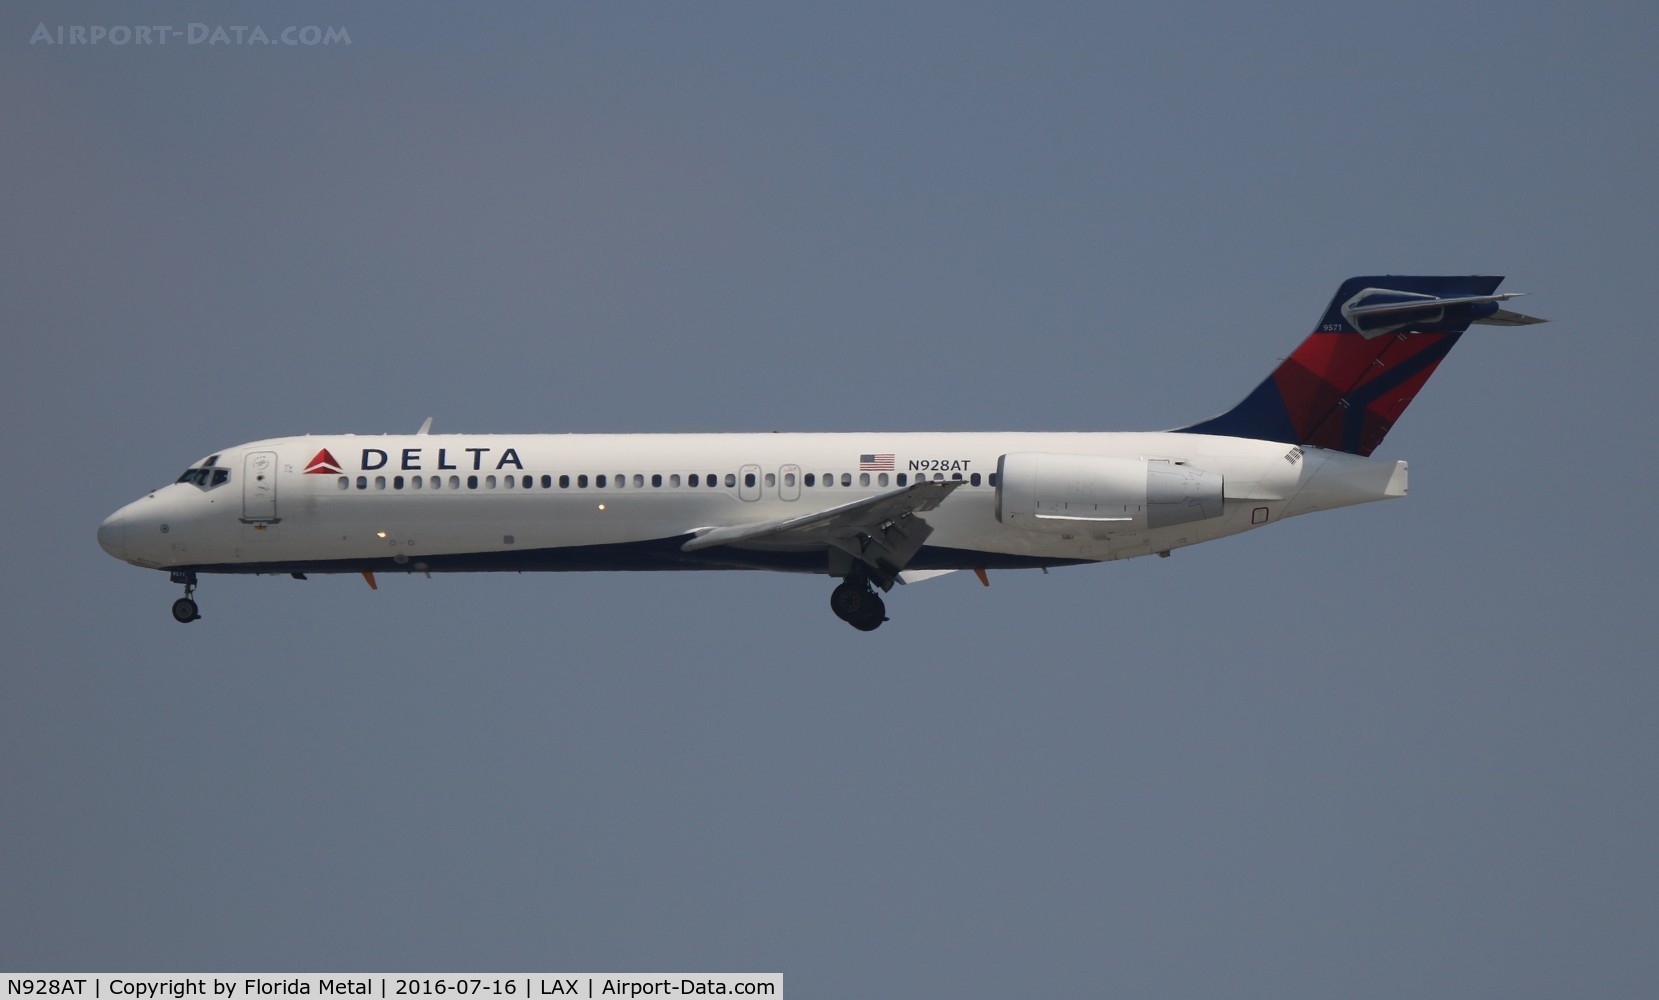 N928AT, 2000 Boeing 717-200 C/N 55076, Delta